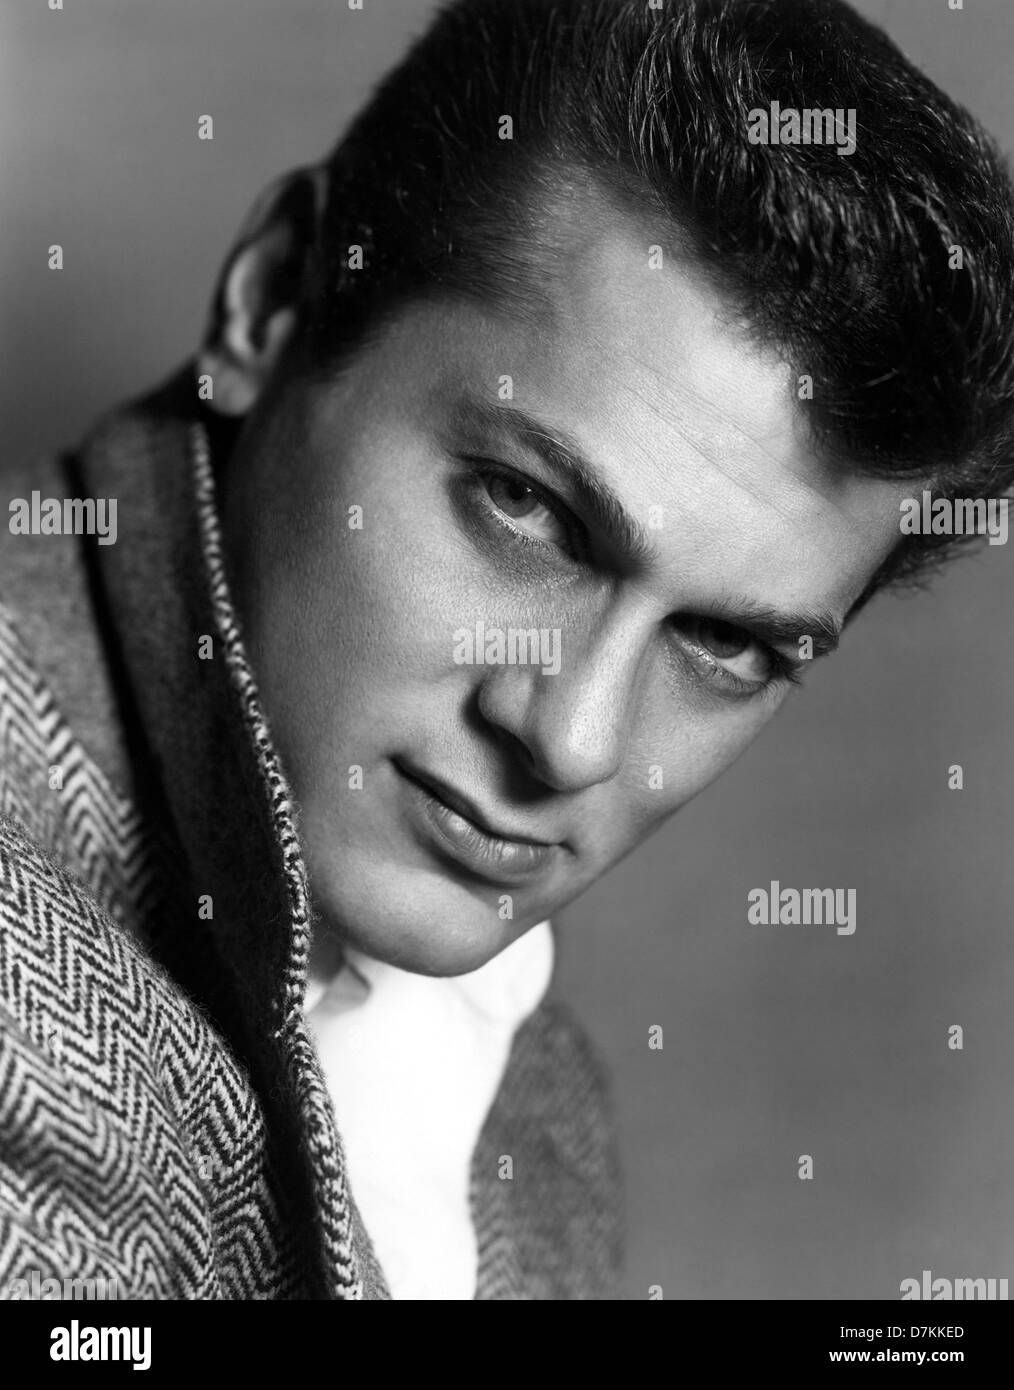 TONY CURTIS actor de cine estadounidense en 1955. Foto de stock